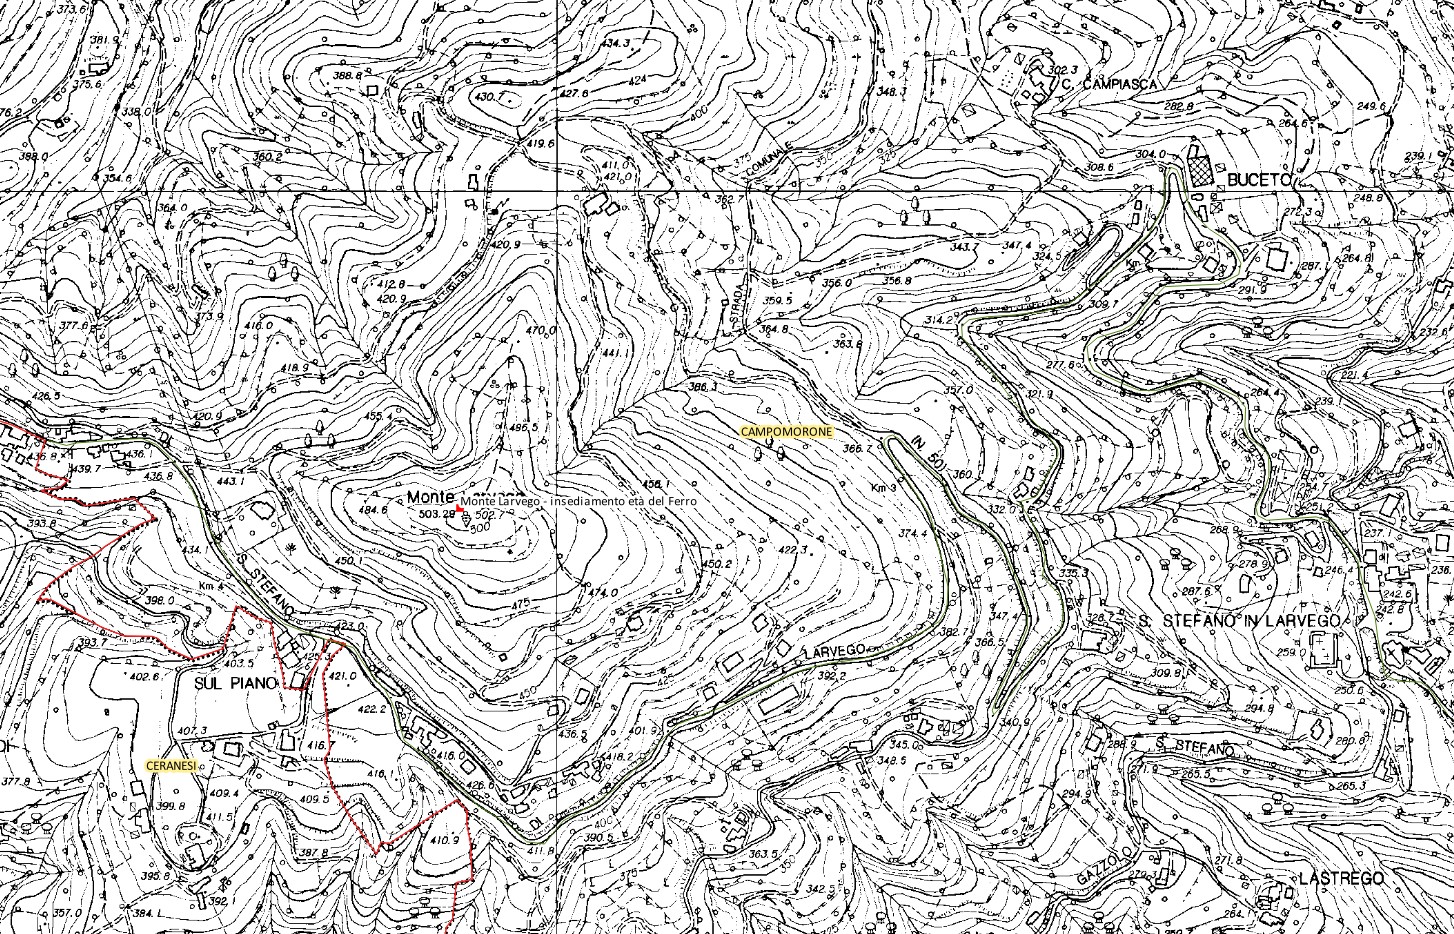 Monte Larvego (insediamento, tracce di insediamento) - Campomorone (GE)  (PERIODIZZAZIONI/ PROTOSTORIA/ Età del Ferro)